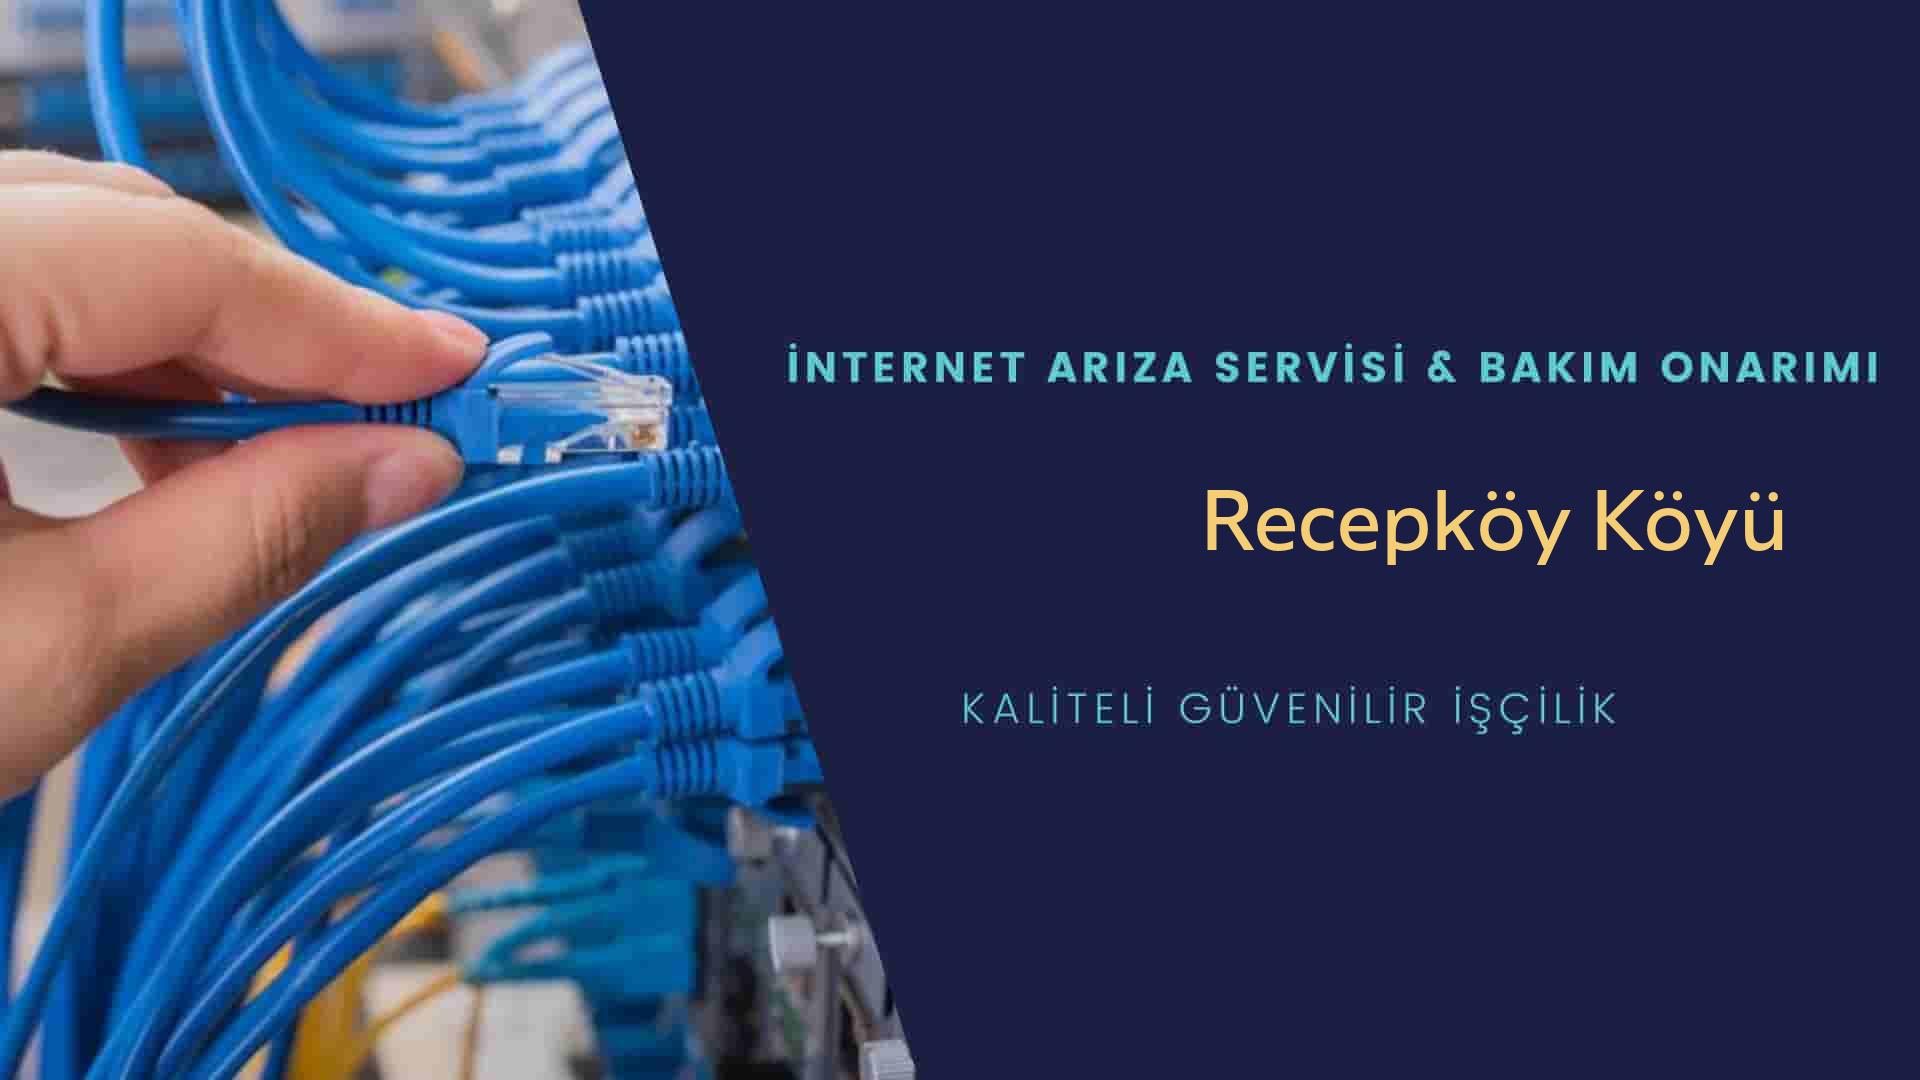 Recepköy Köyü internet kablosu çekimi yapan yerler veya elektrikçiler mi? arıyorsunuz doğru yerdesiniz o zaman sizlere 7/24 yardımcı olacak profesyonel ustalarımız bir telefon kadar yakındır size.